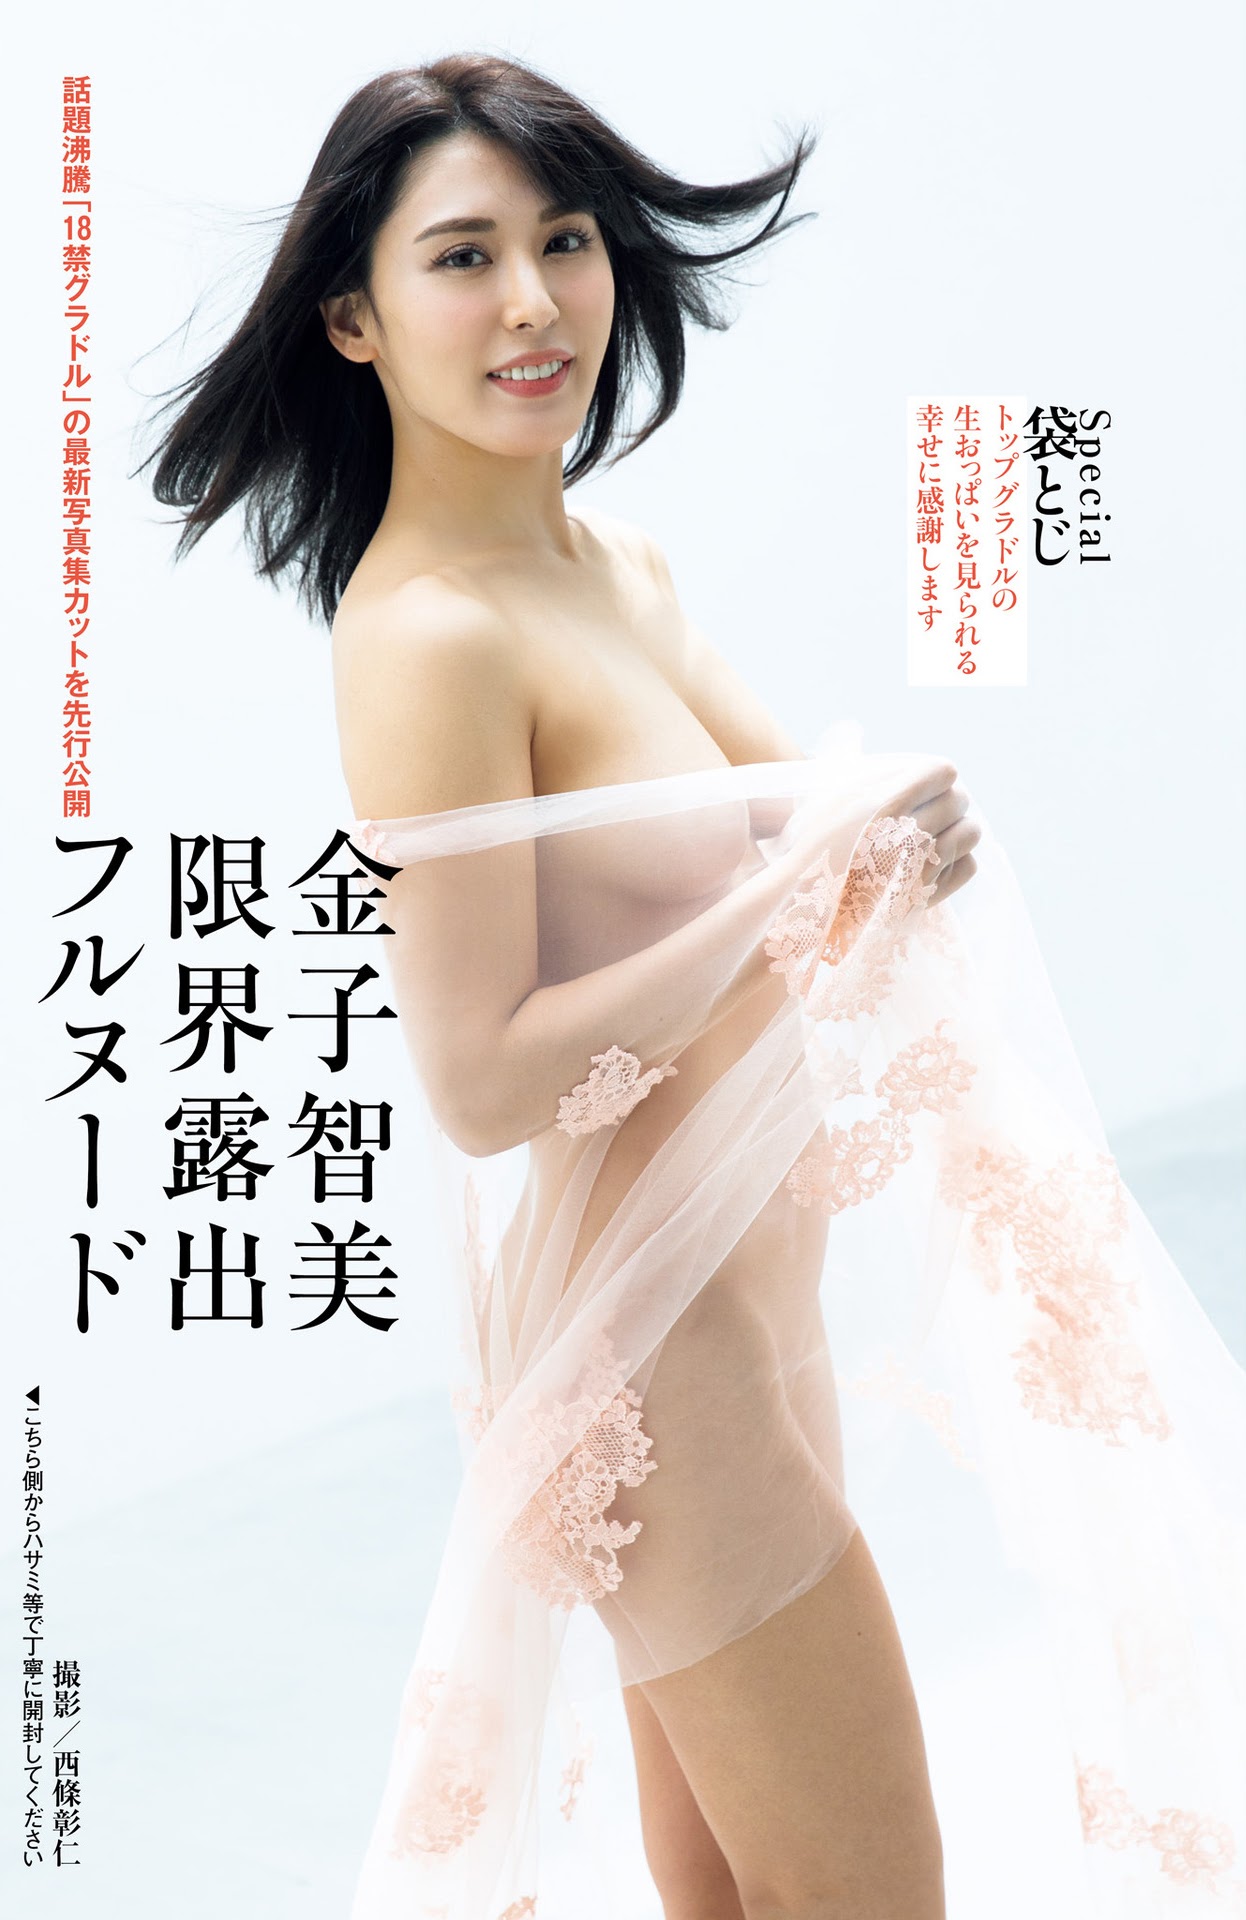 Kaneko Satomi 金子智美, Shukan Post 2021.10.15 (週刊ポスト 2021年10月15日号)